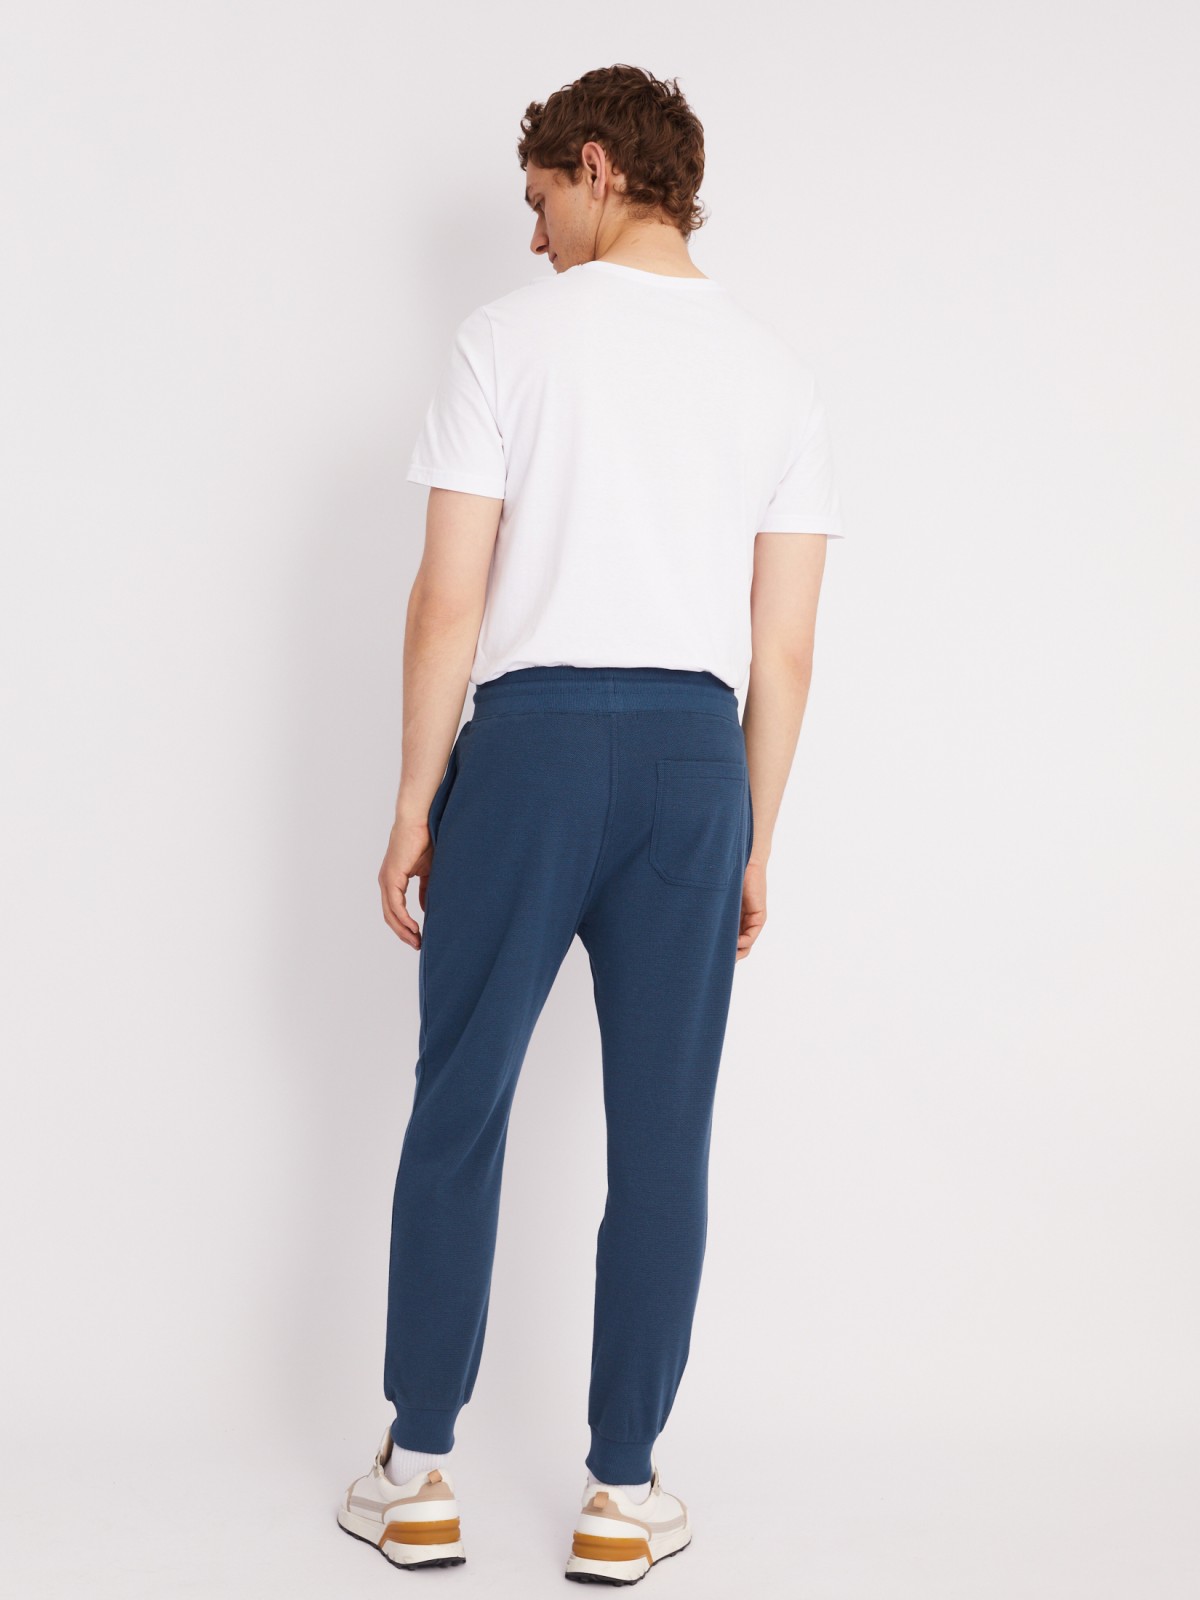 Трикотажные брюки-джоггеры в спортивном стиле zolla 21331762F012, цвет бирюзовый, размер S - фото 5